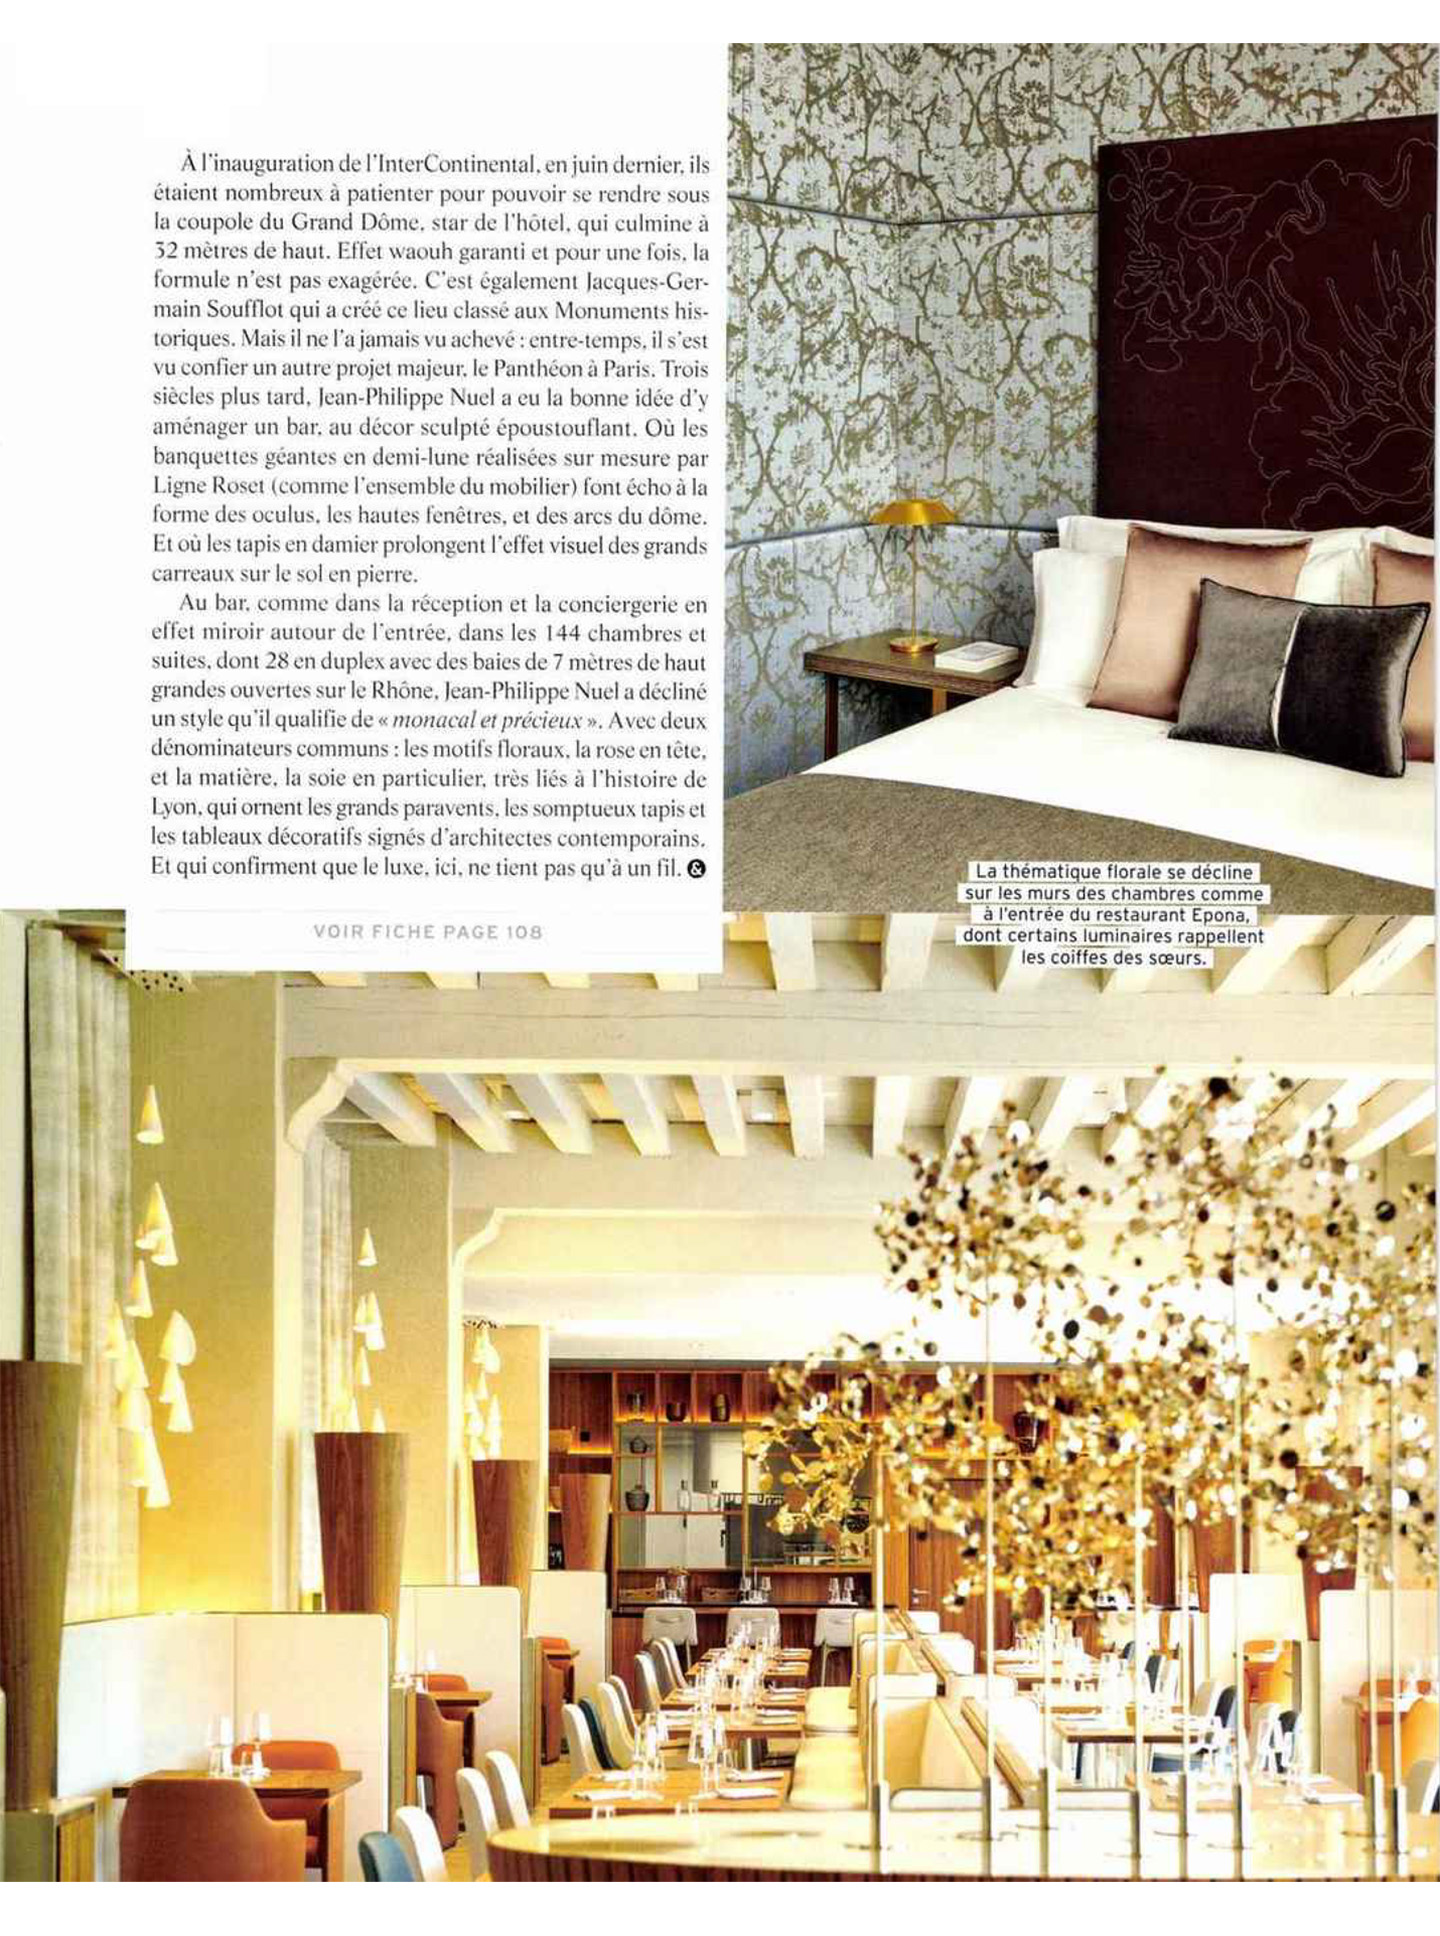 article sur l'InterContinental Lyon Hotel dieu, hotel de luxe 5 étoiles designé par l'architecte jean-philippe nuel